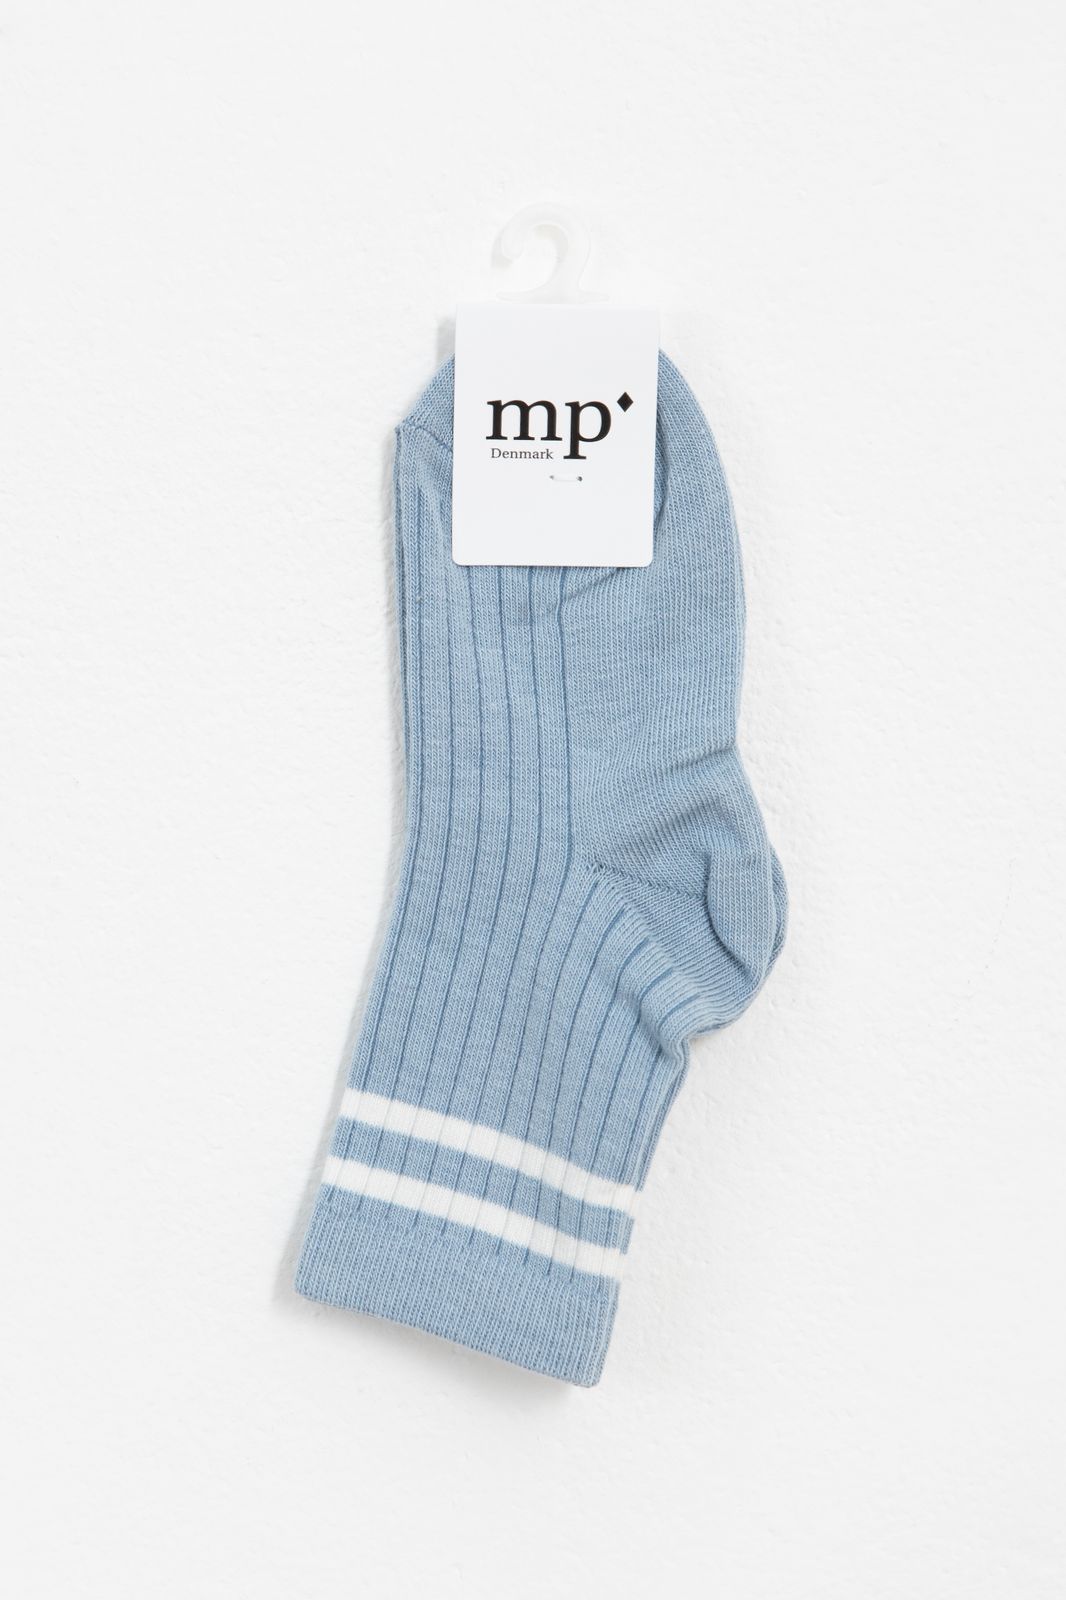 MP Denmark blauwe sokken met strepen